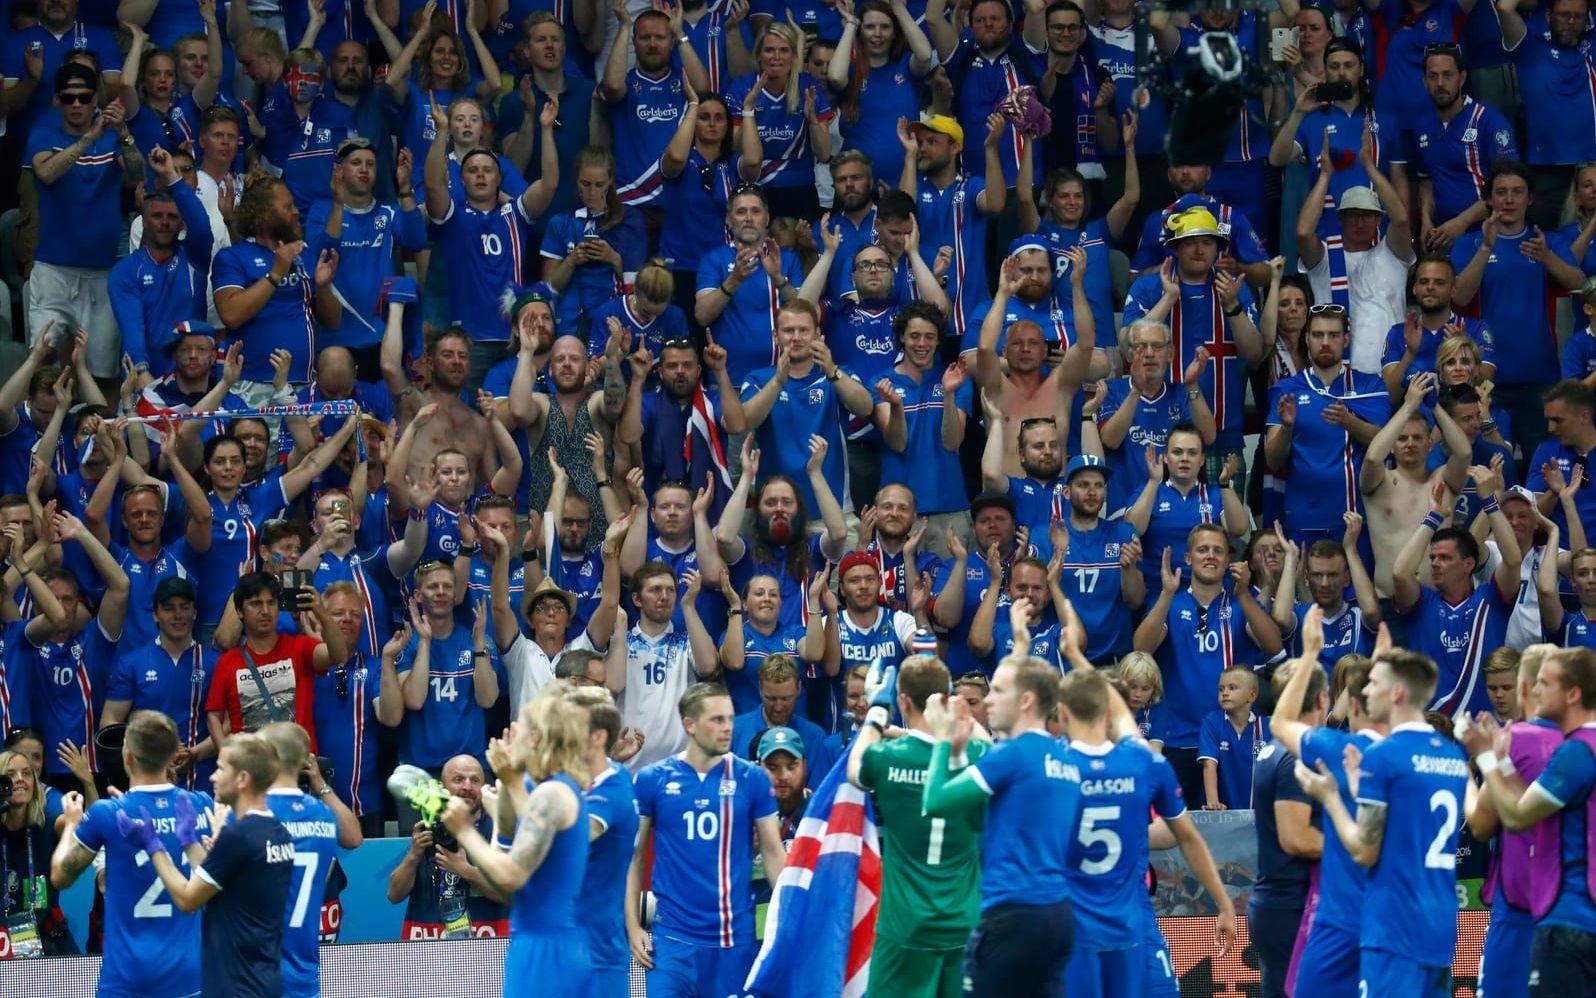 Så här såg det ut när Lars Lagerbäck och hans Island tog turneringens skrällseger och slog ut England. FOTO: Bildbyrån